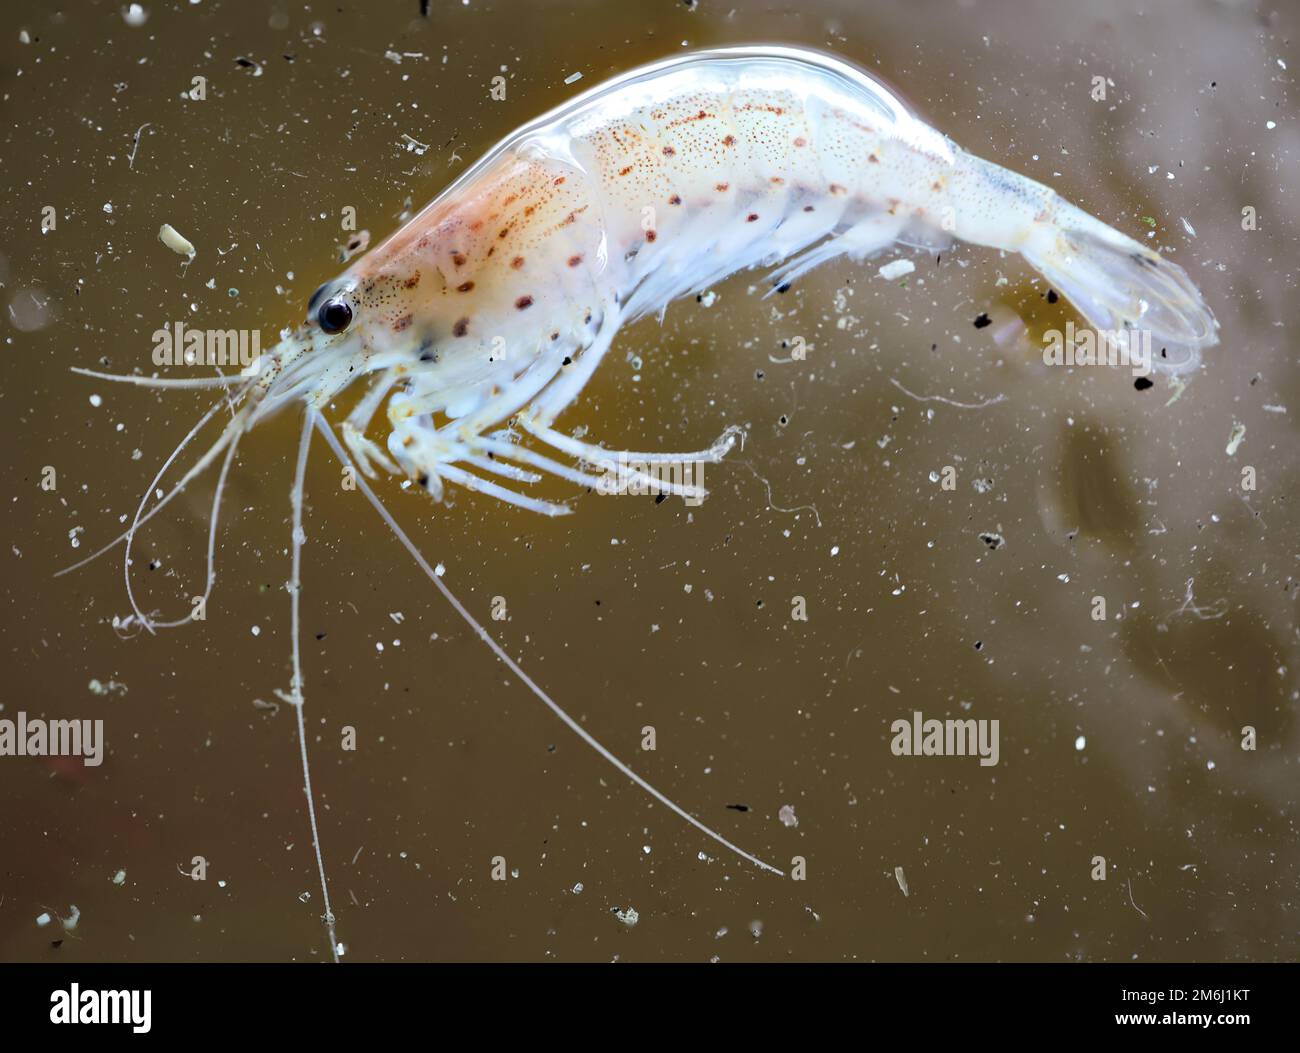 Close up of an Amano shrimp in an aquarium. Stock Photo